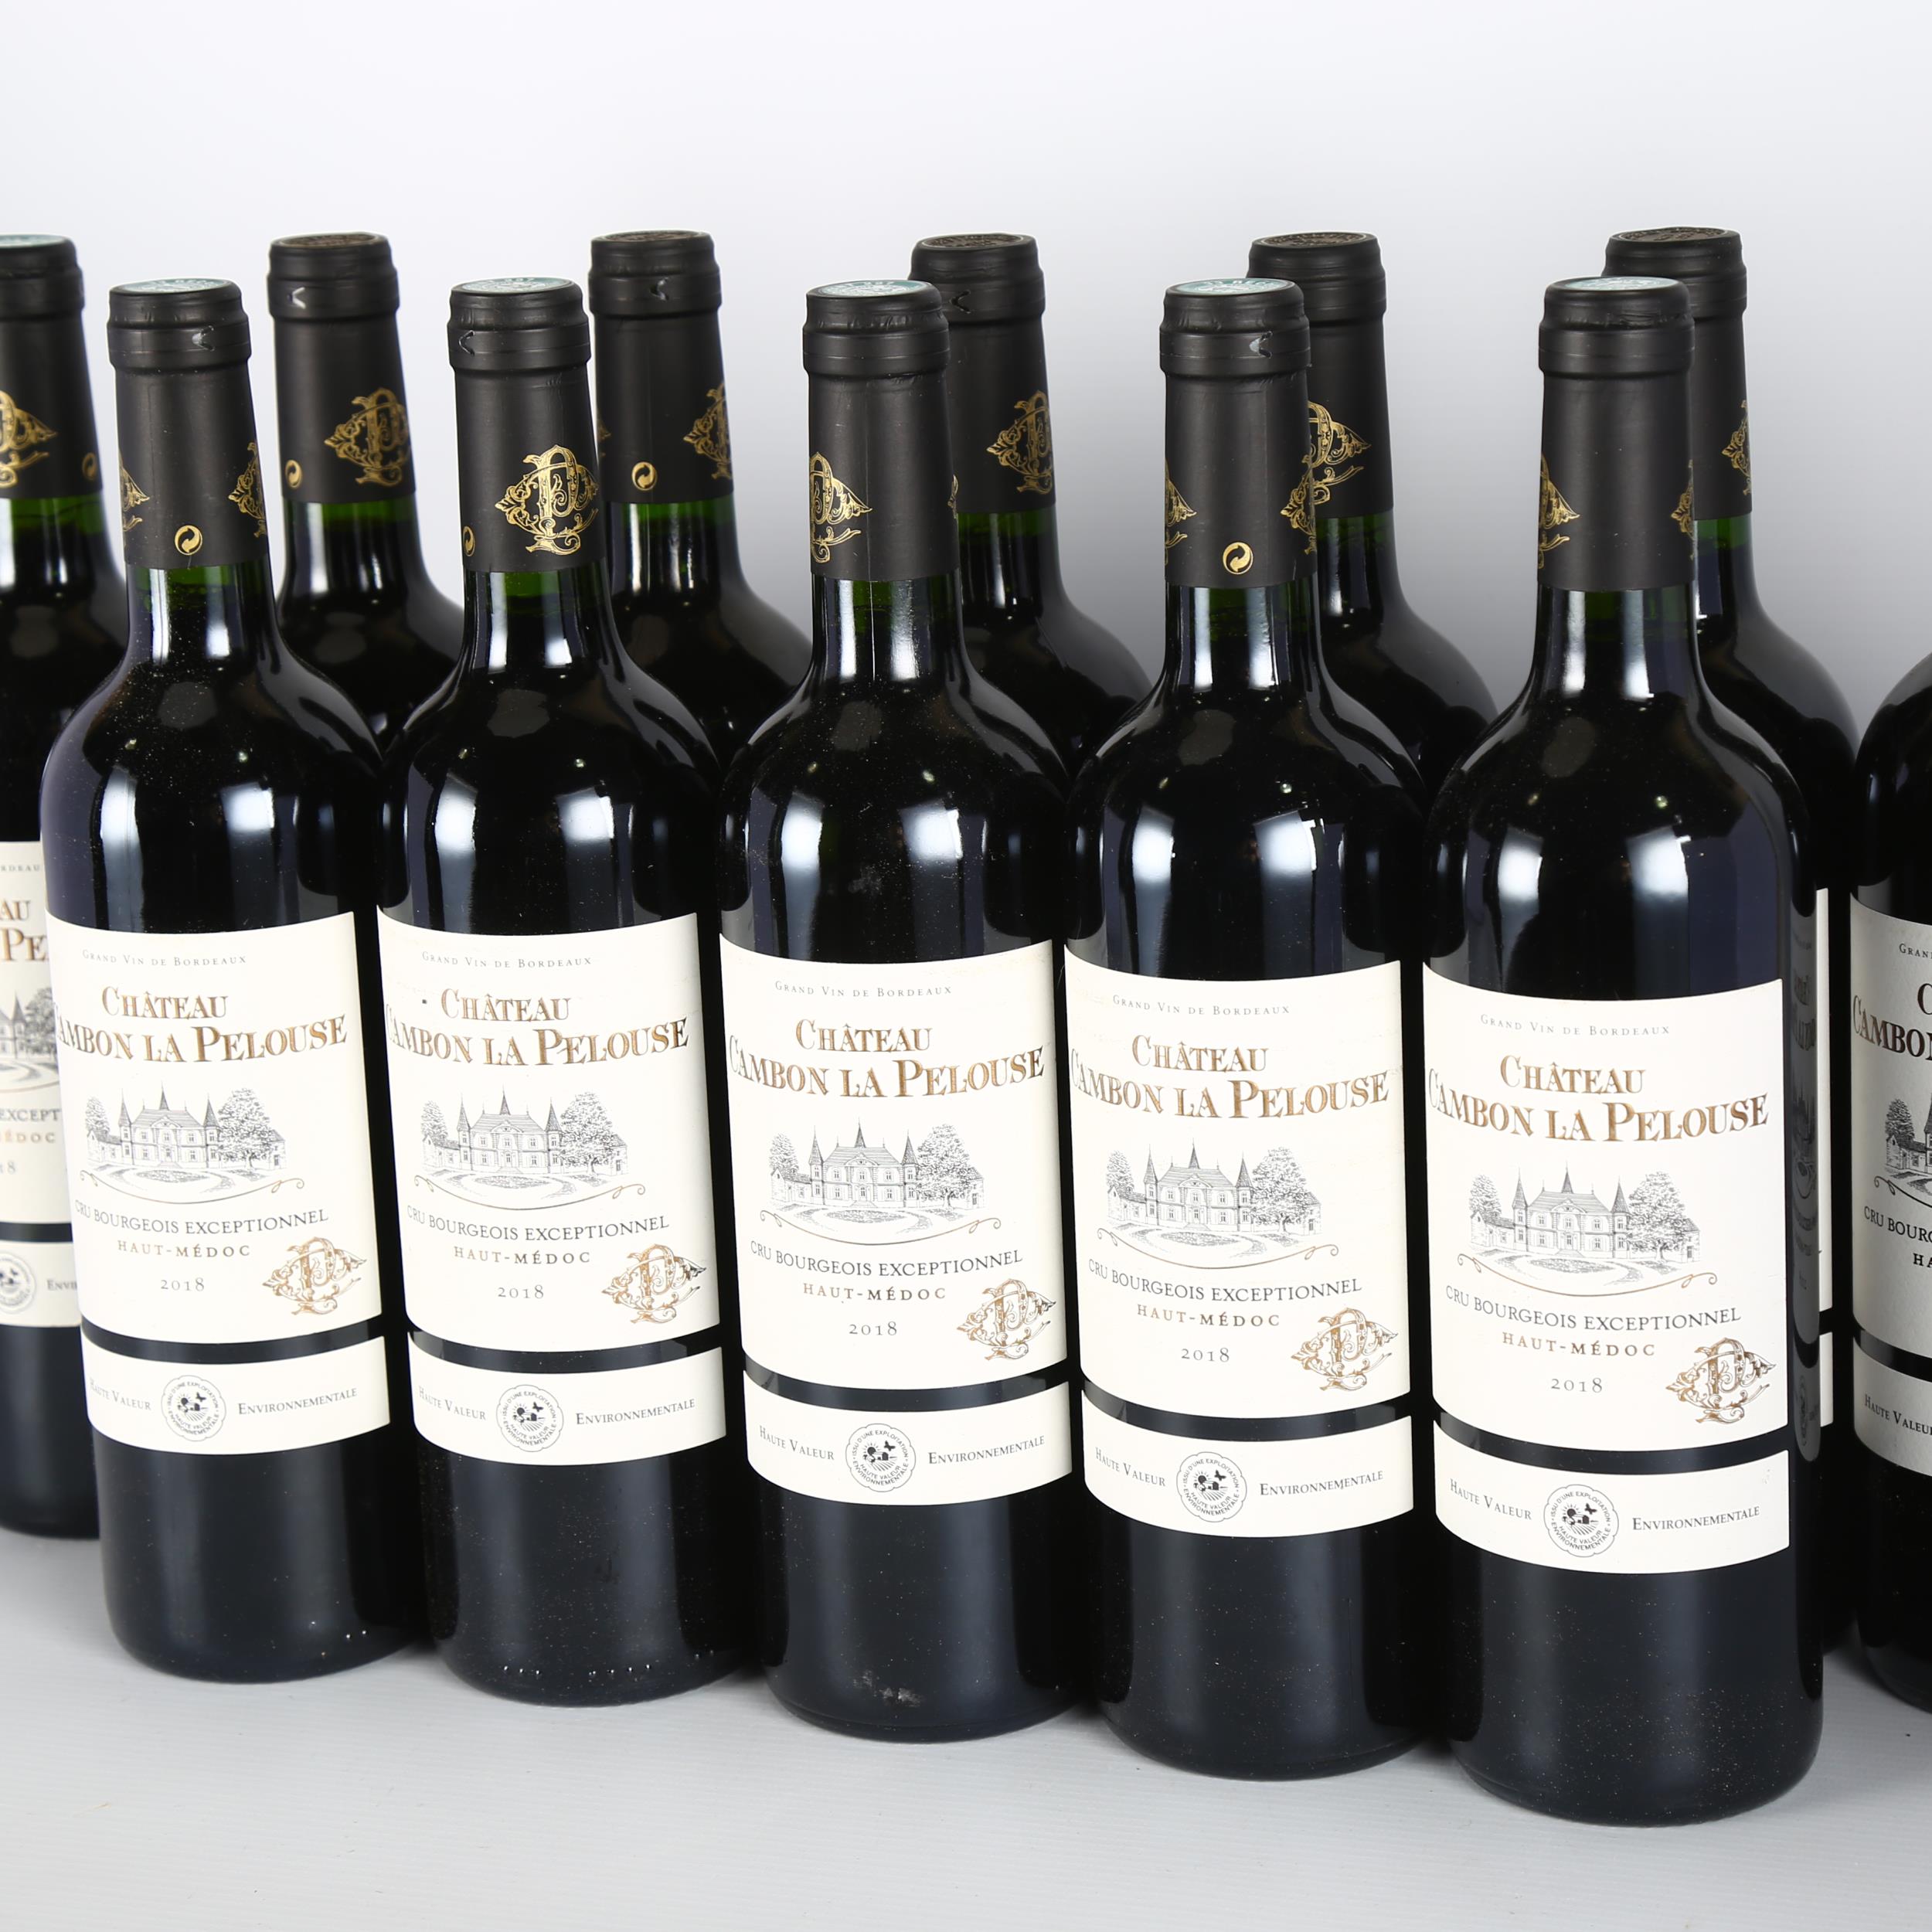 Chateau Cambon La Pelouse 2018, Haut-Medoc x 12 bottles. 92 points Decanter. Bordeaux red wine. - Image 2 of 3